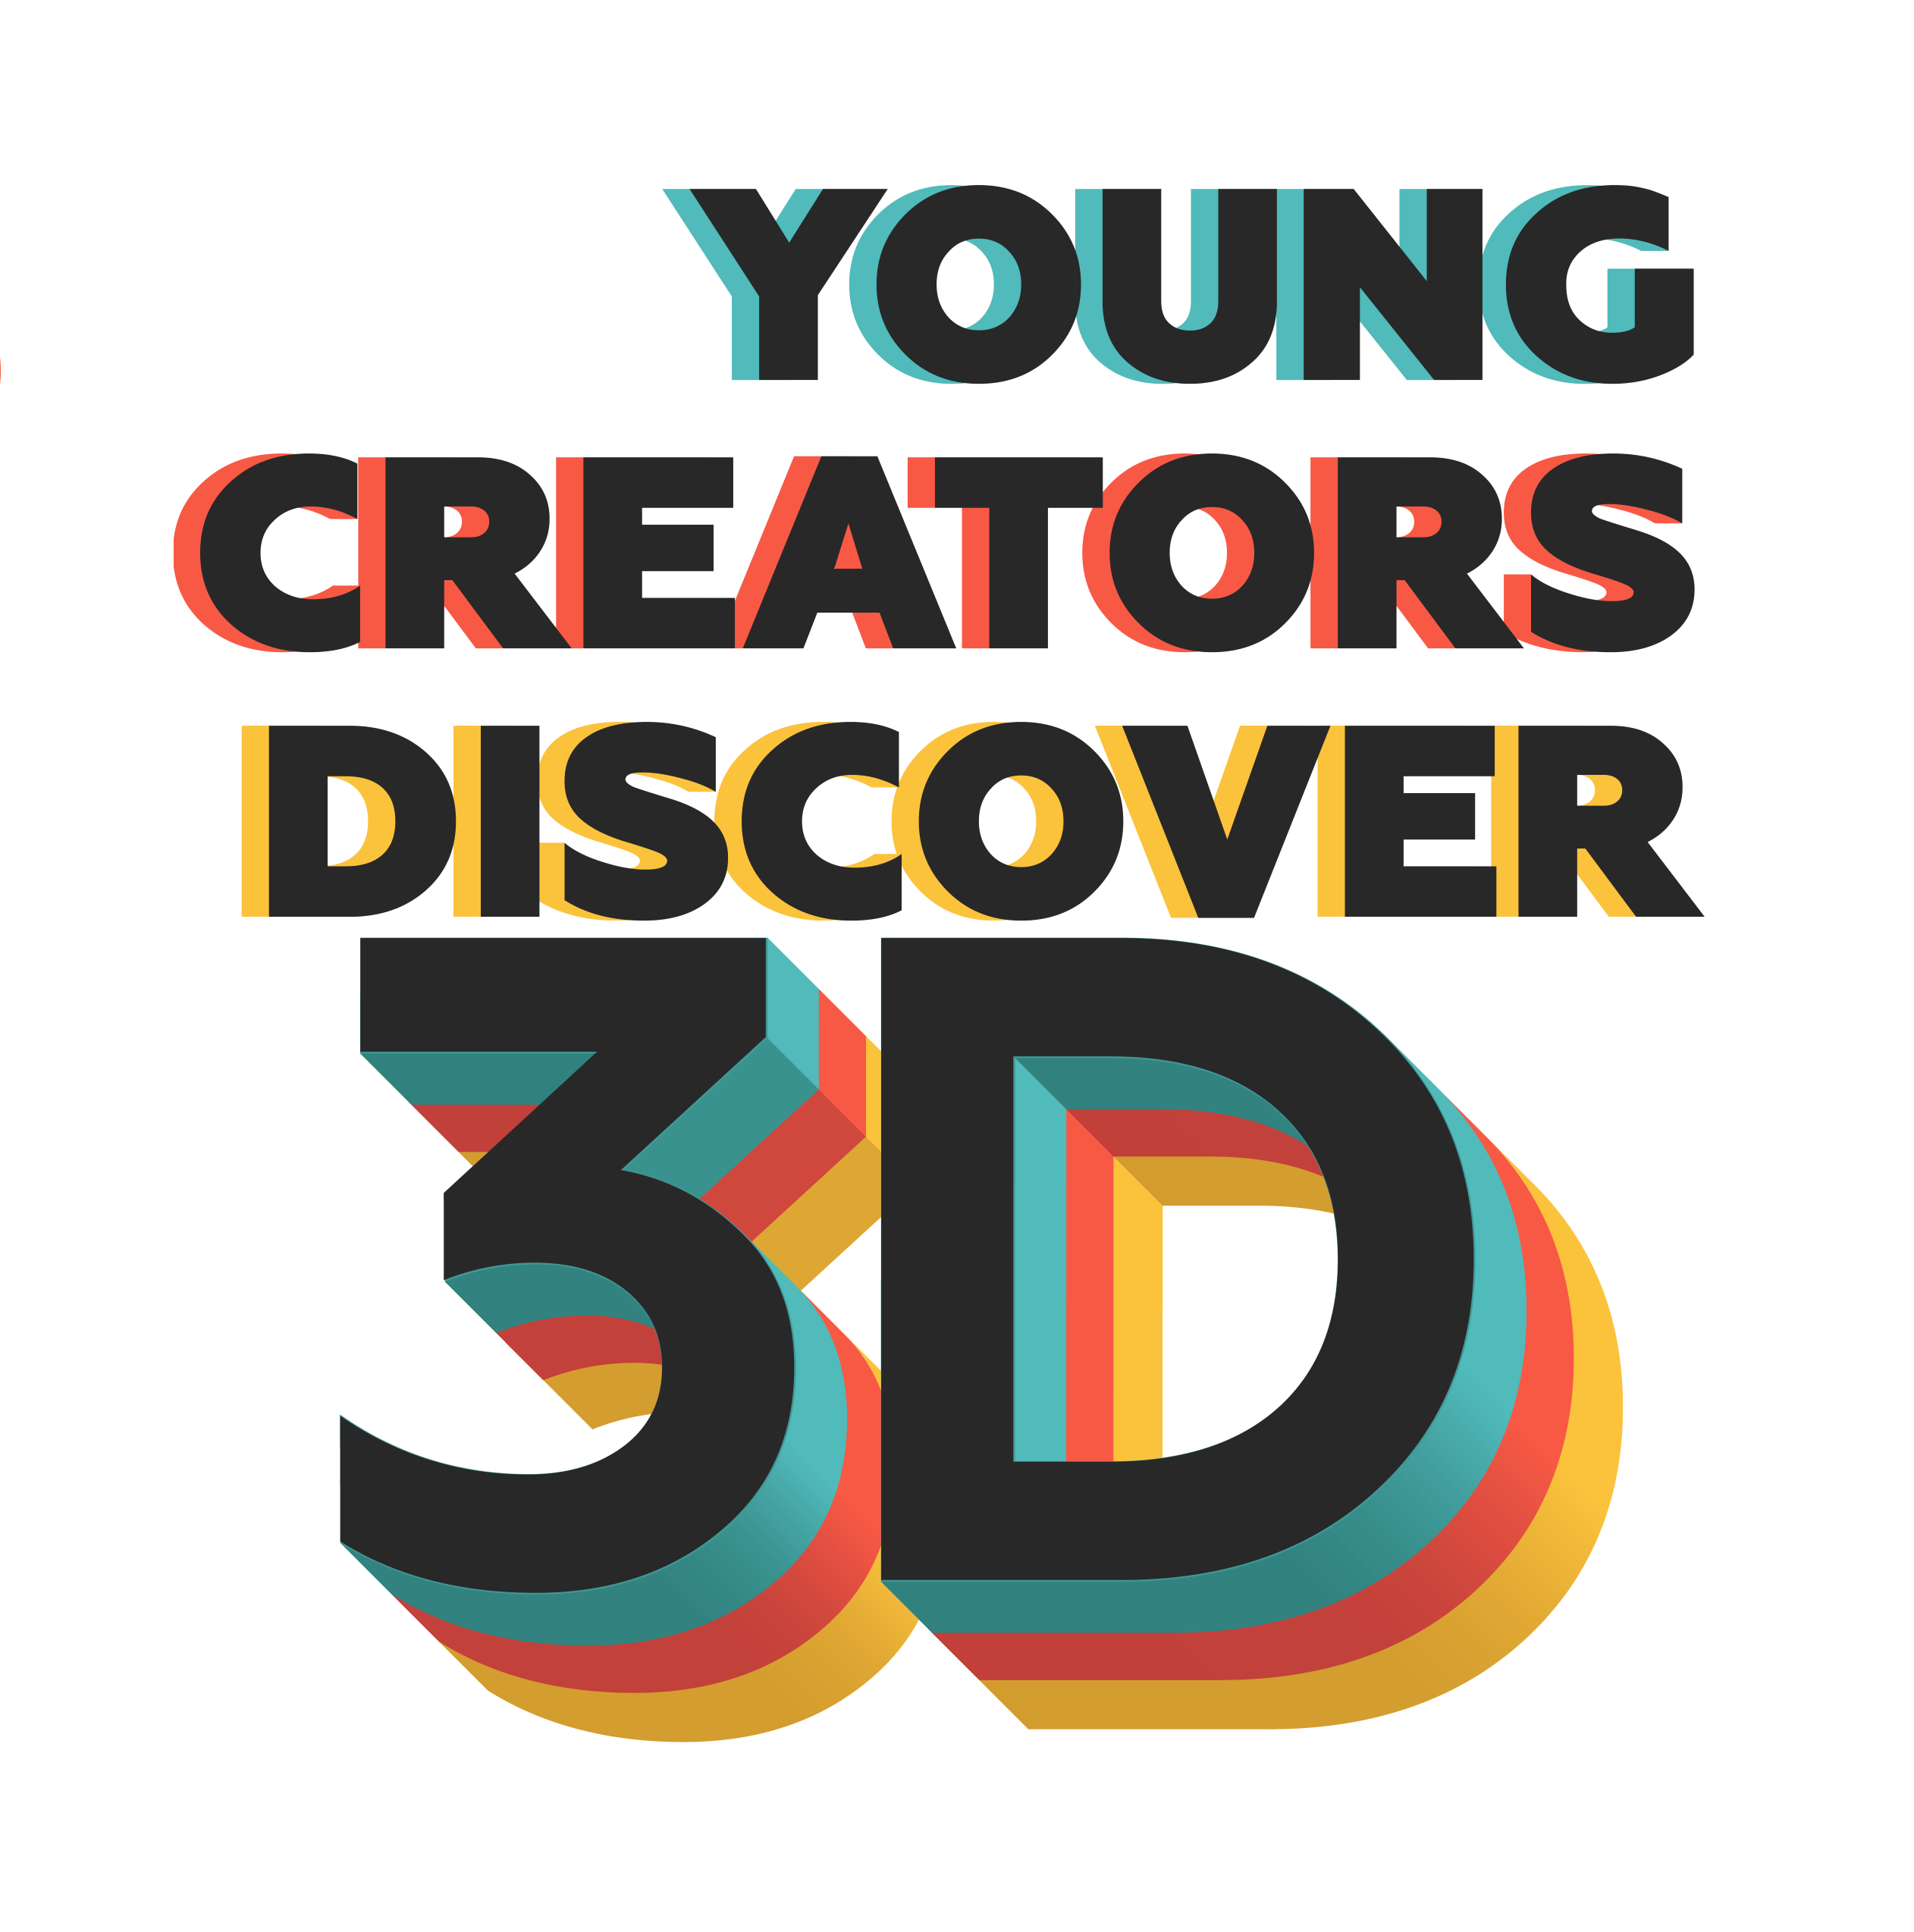 Jaunieji kūrėjai atranda 3D